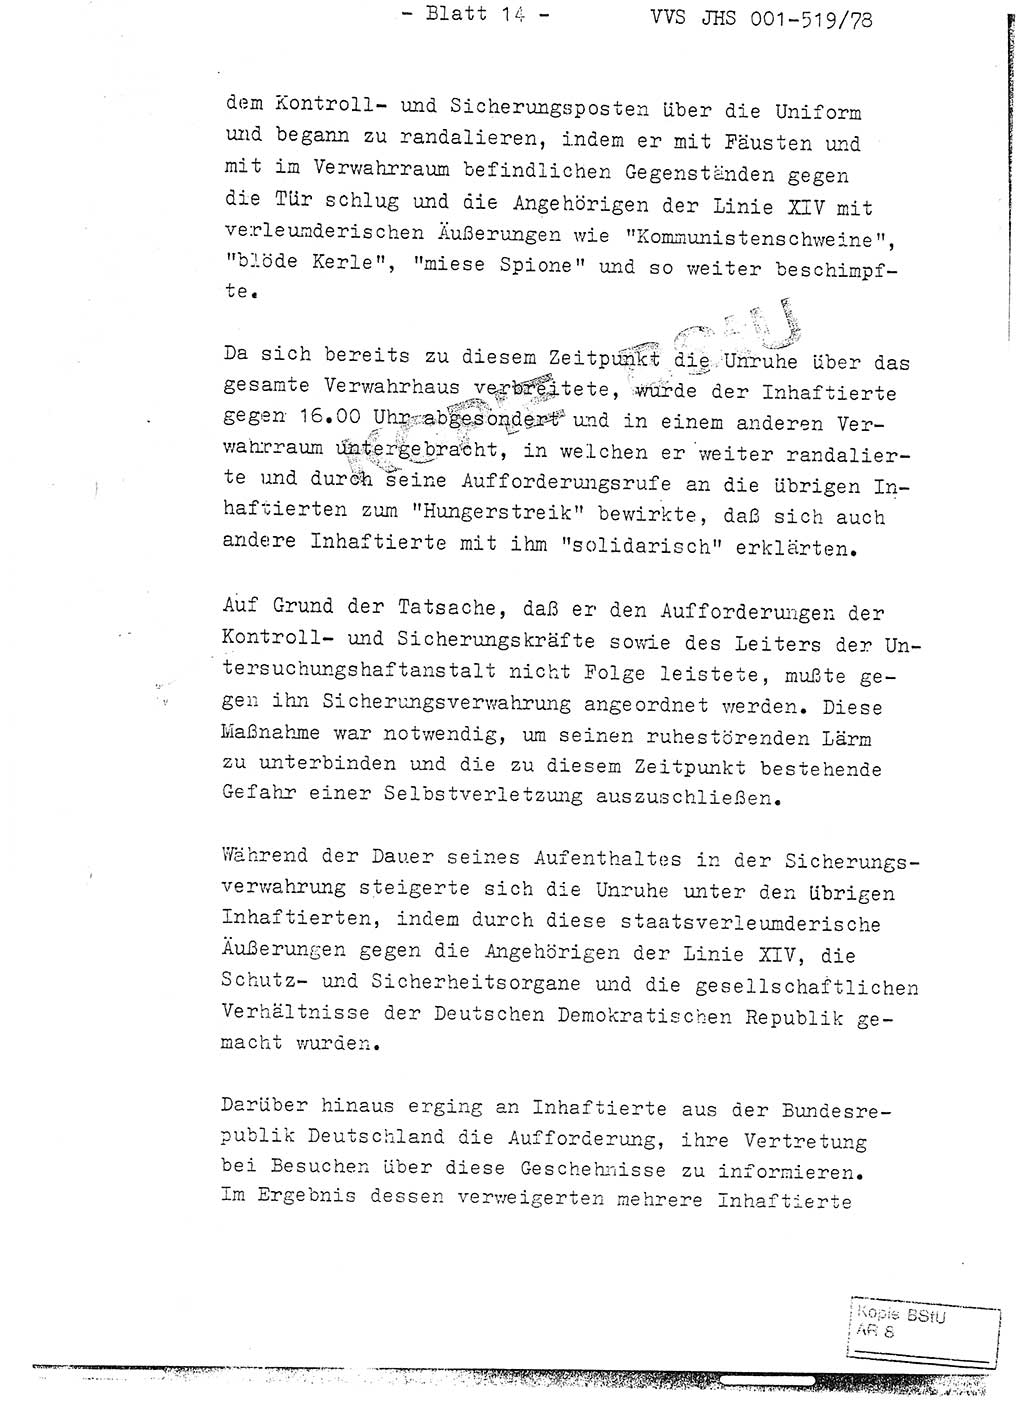 Fachschulabschlußarbeit Hauptmann Alfons Lützelberger (Abt. ⅩⅣ), Ministerium für Staatssicherheit (MfS) [Deutsche Demokratische Republik (DDR)], Juristische Hochschule (JHS), Vertrauliche Verschlußsache (VVS) 001-519/78, Potsdam 1978, Blatt 14 (FS-Abschl.-Arb. MfS DDR JHS VVS 001-519/78 1978, Bl. 14)